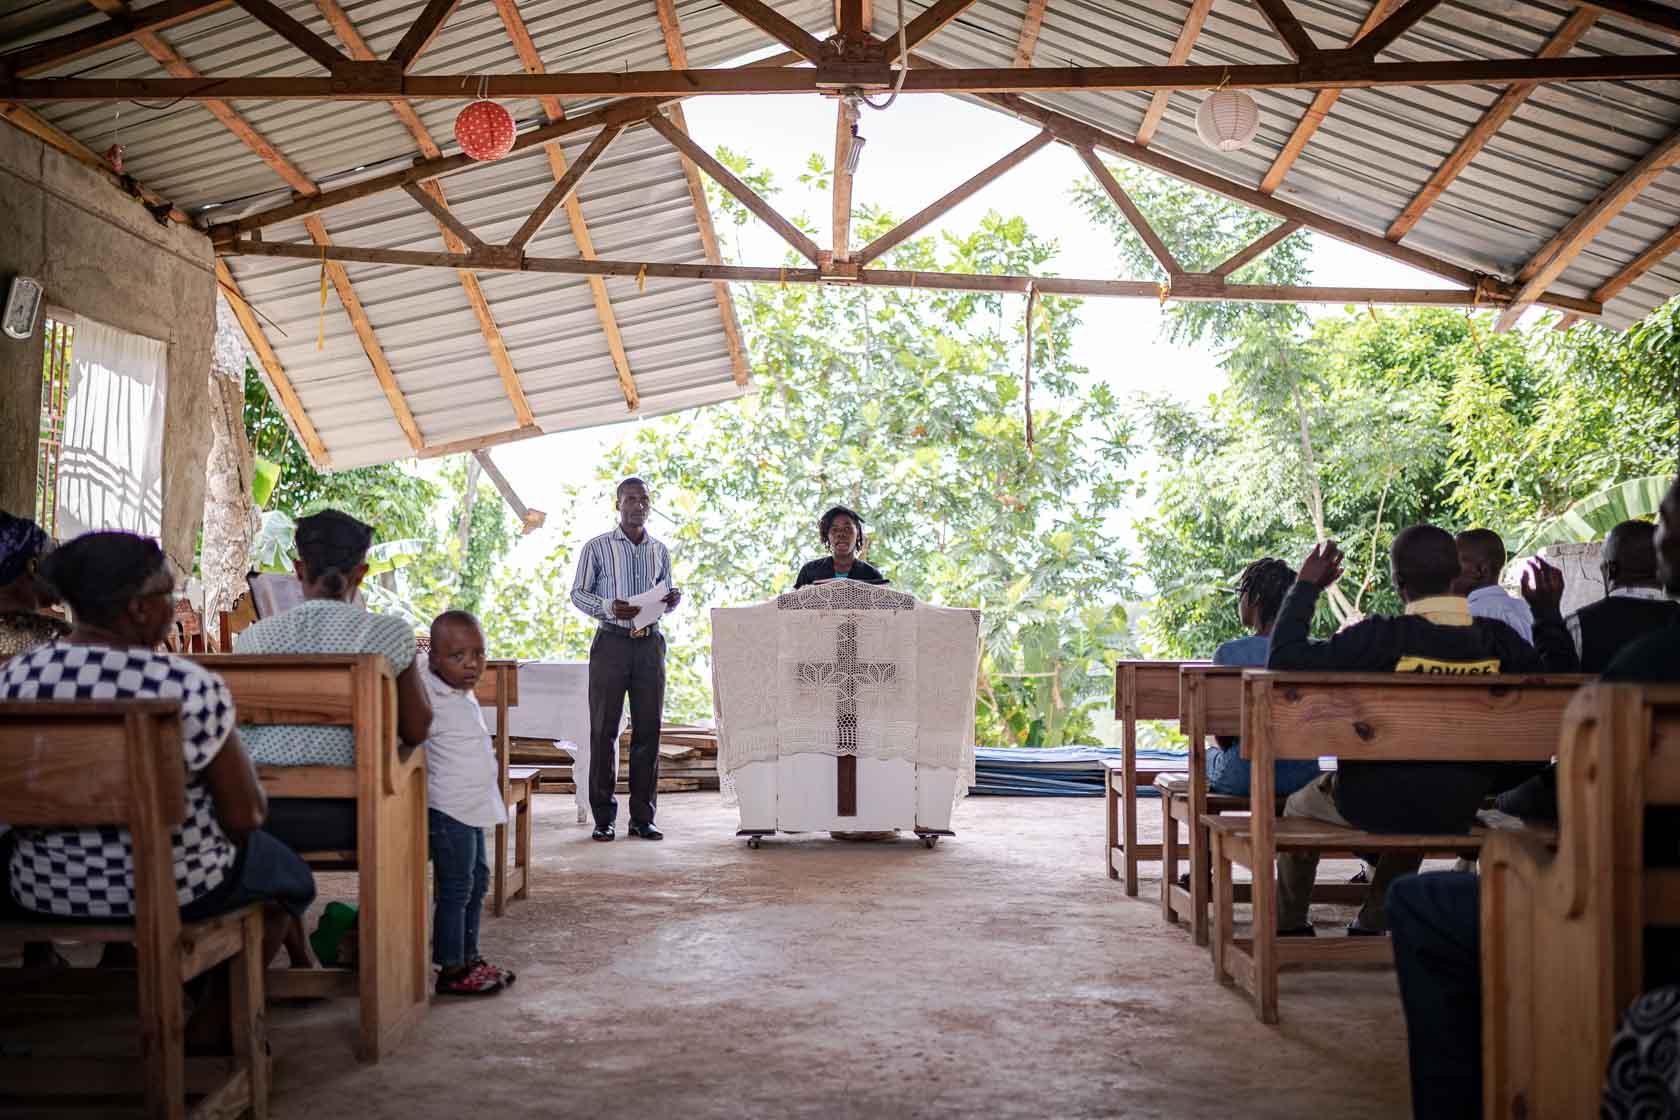 Des paroissiens assistent à une messe dans une église partiellement détruite. Camp Perrin, Haïti. Septembre 2021.